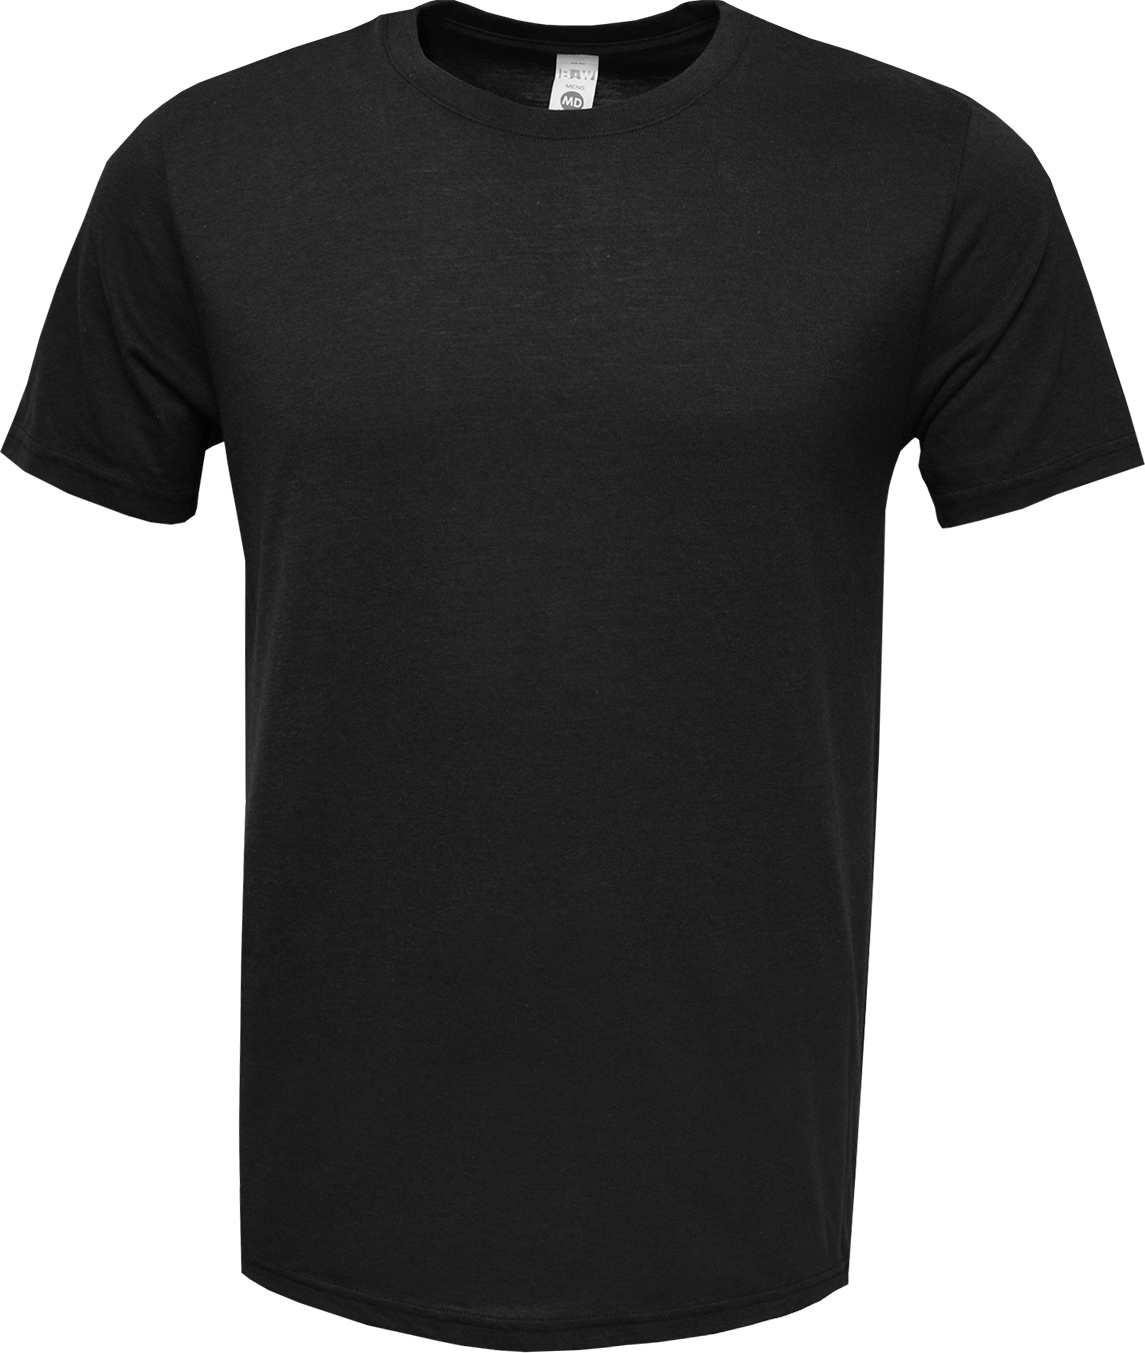 BAW Athletic Wear TR72 - Unisex Tri Blend T-Shirt Short Sleeve